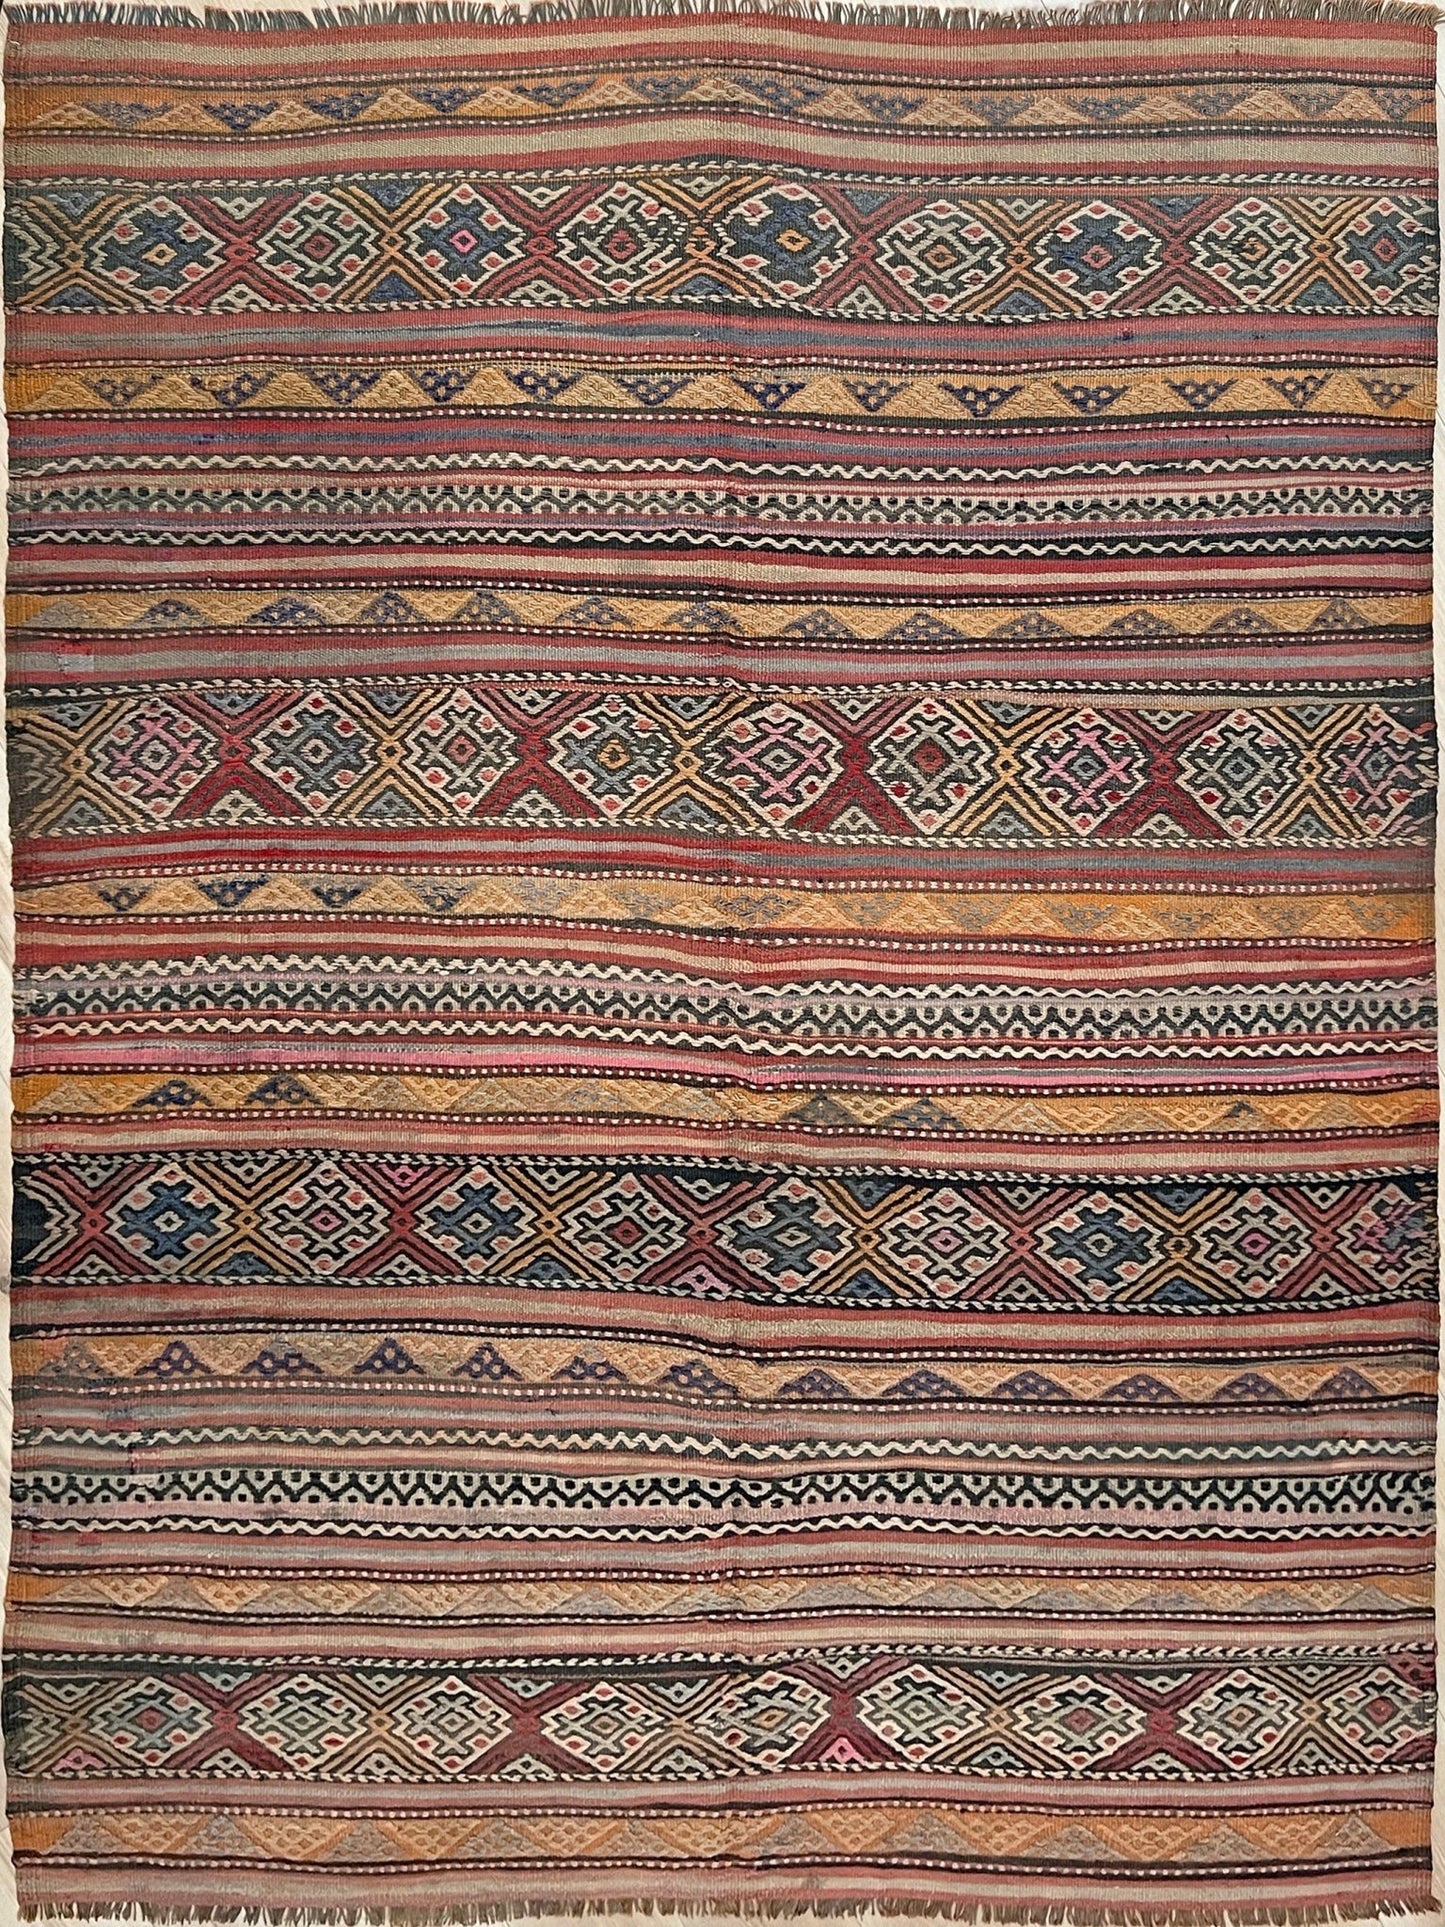 Handmade Turkish Kilim rug shop. Wool 6x8 rug for living room bedroom nursery kitchen dining. Turkish rug shop san francisco bay area